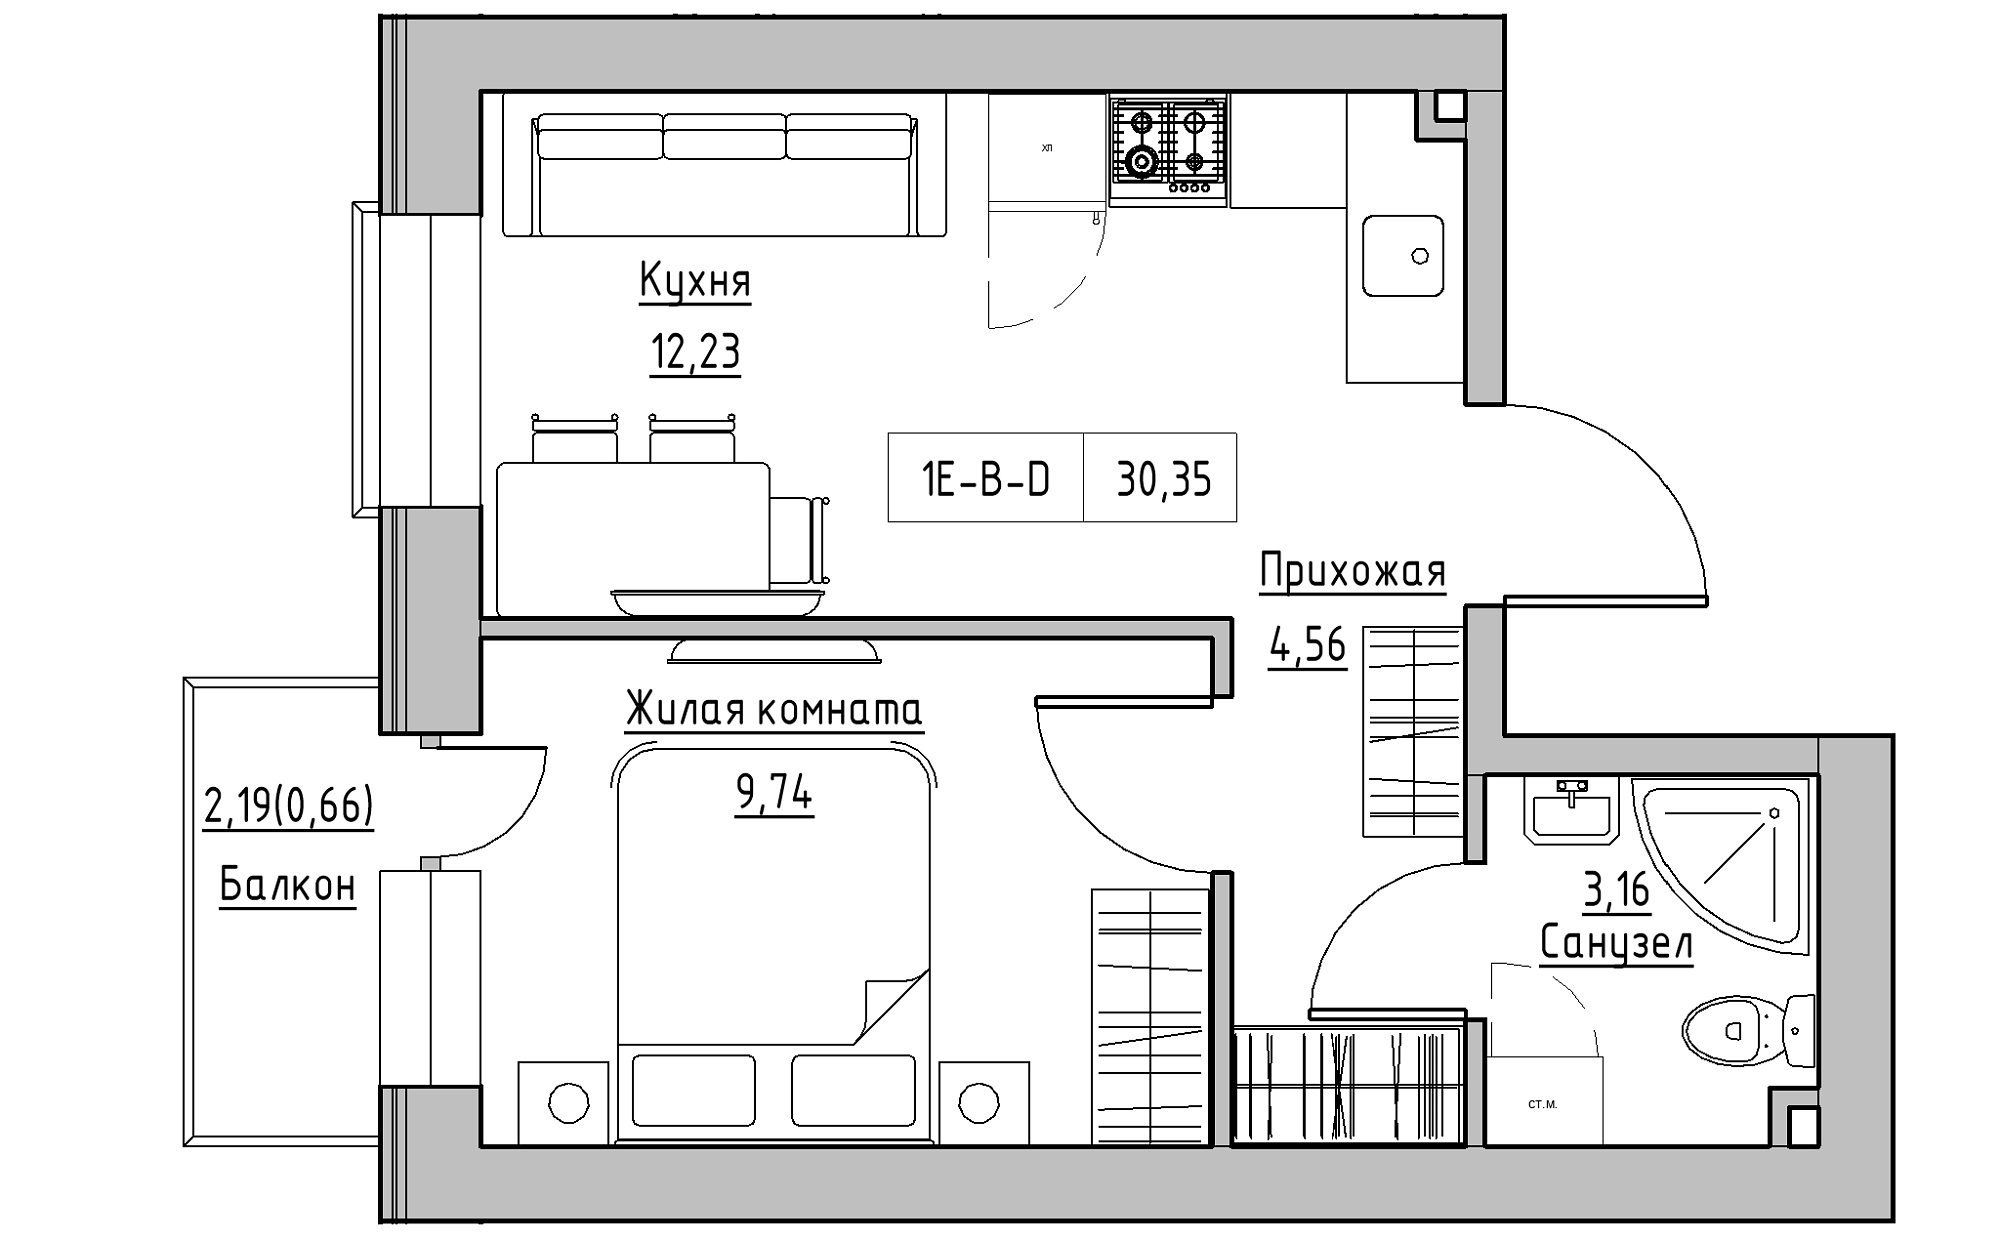 Планировка 1-к квартира площей 30.35м2, KS-022-04/0012.